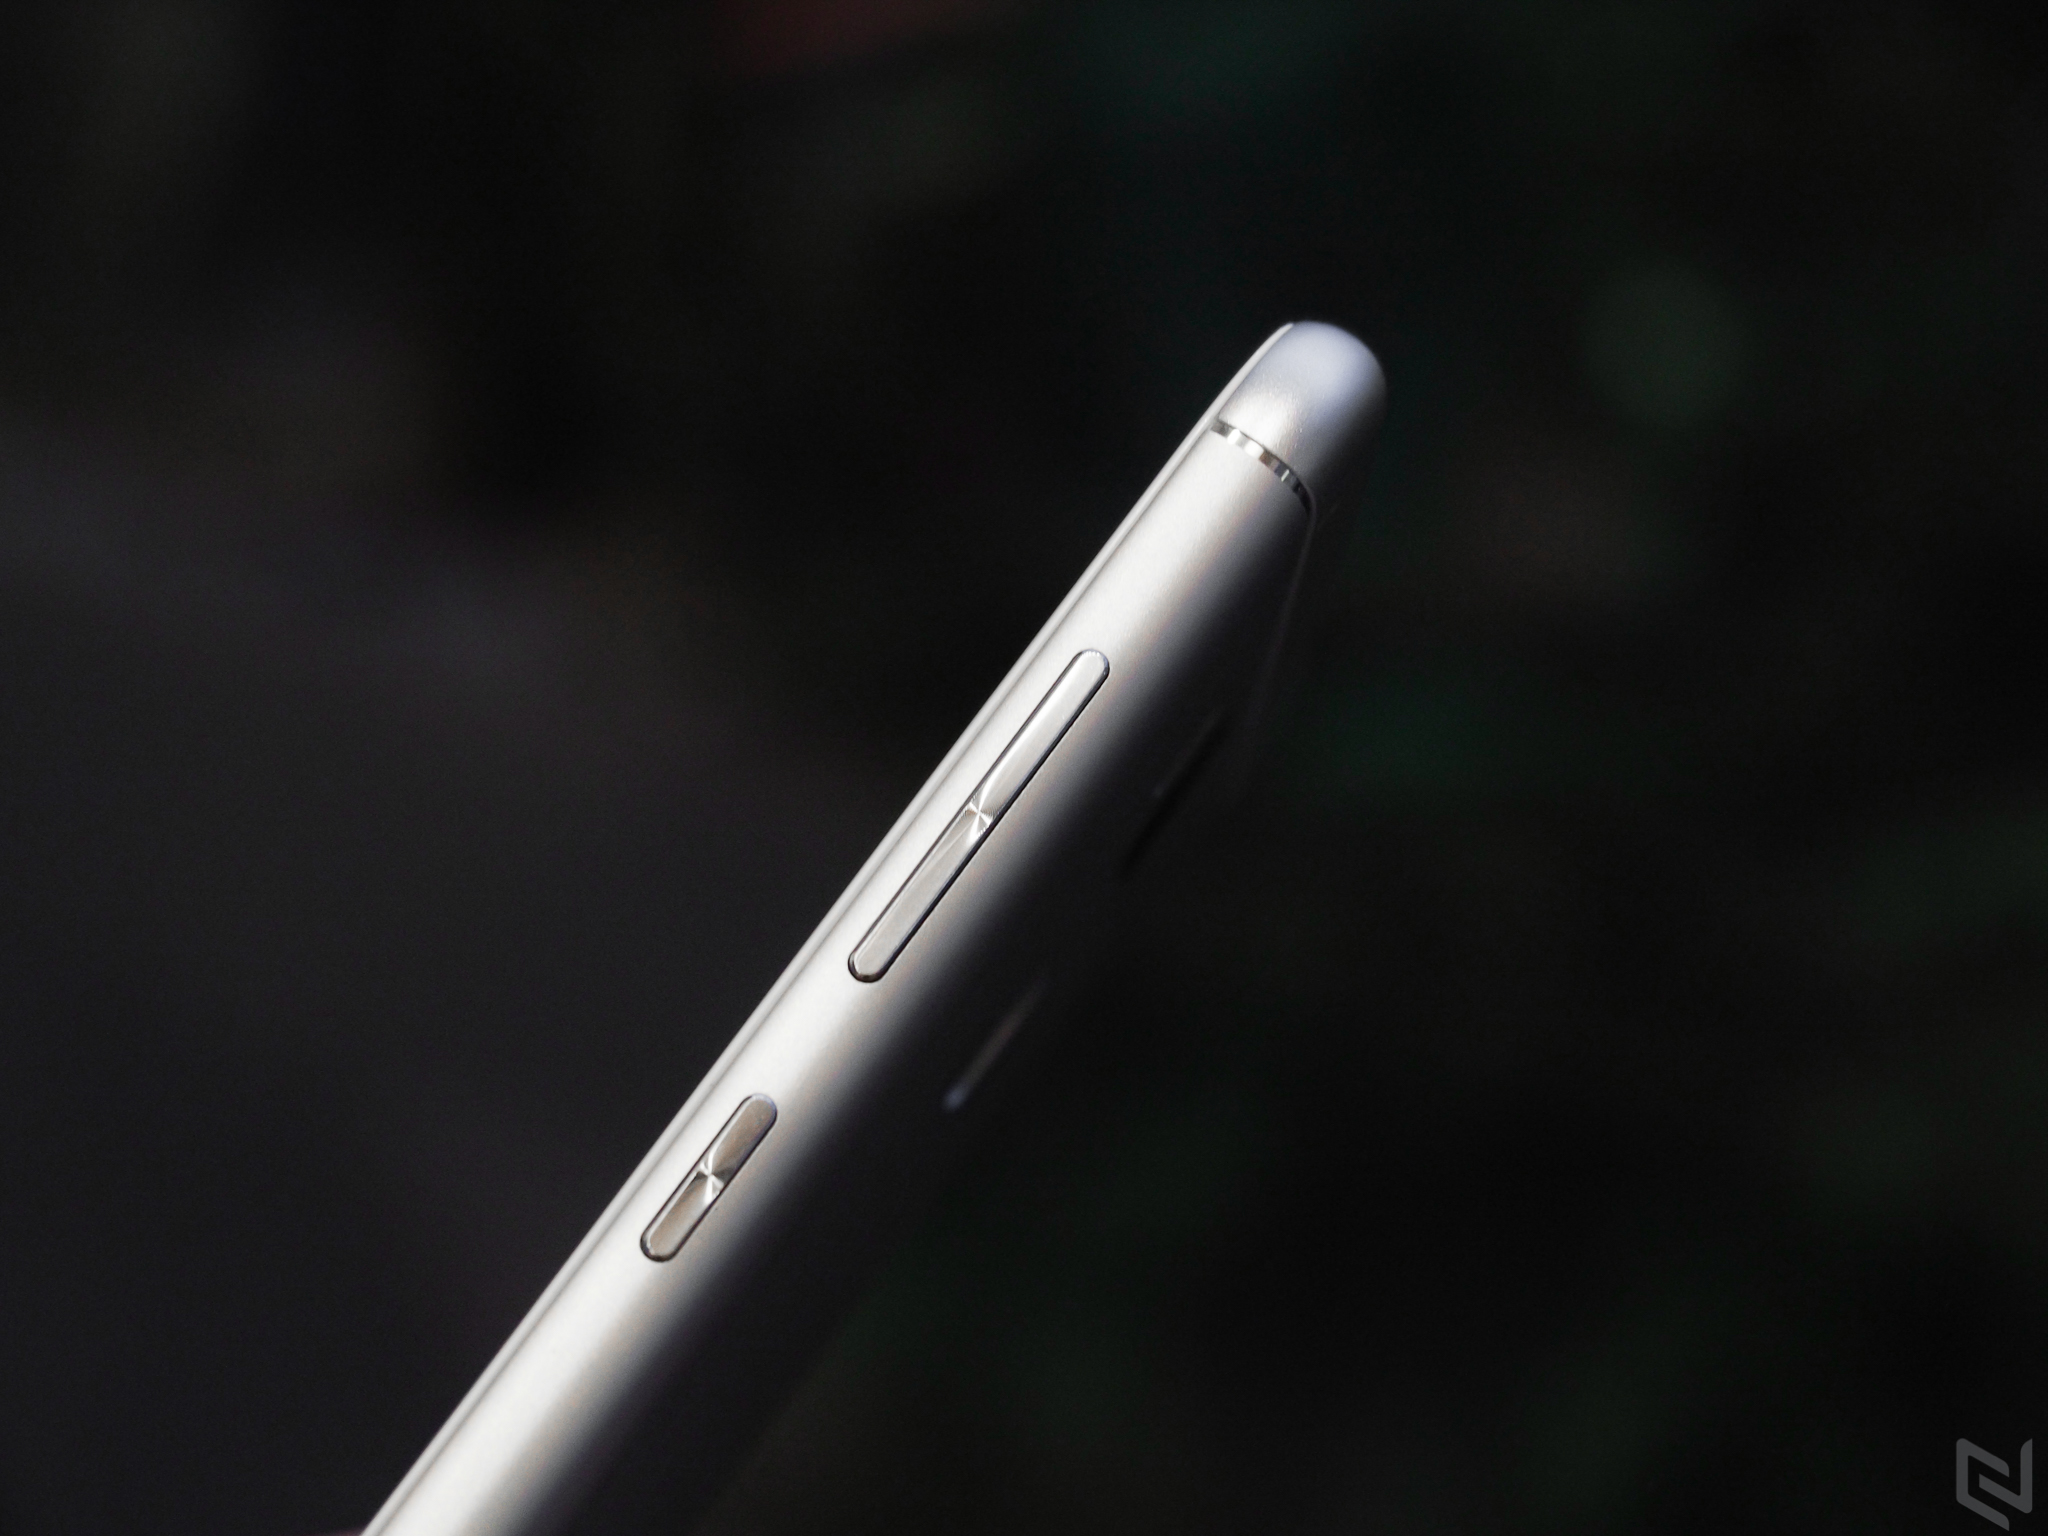 Trên tay ZenFone 3 Max phiên bản màn hình 5.5 inch